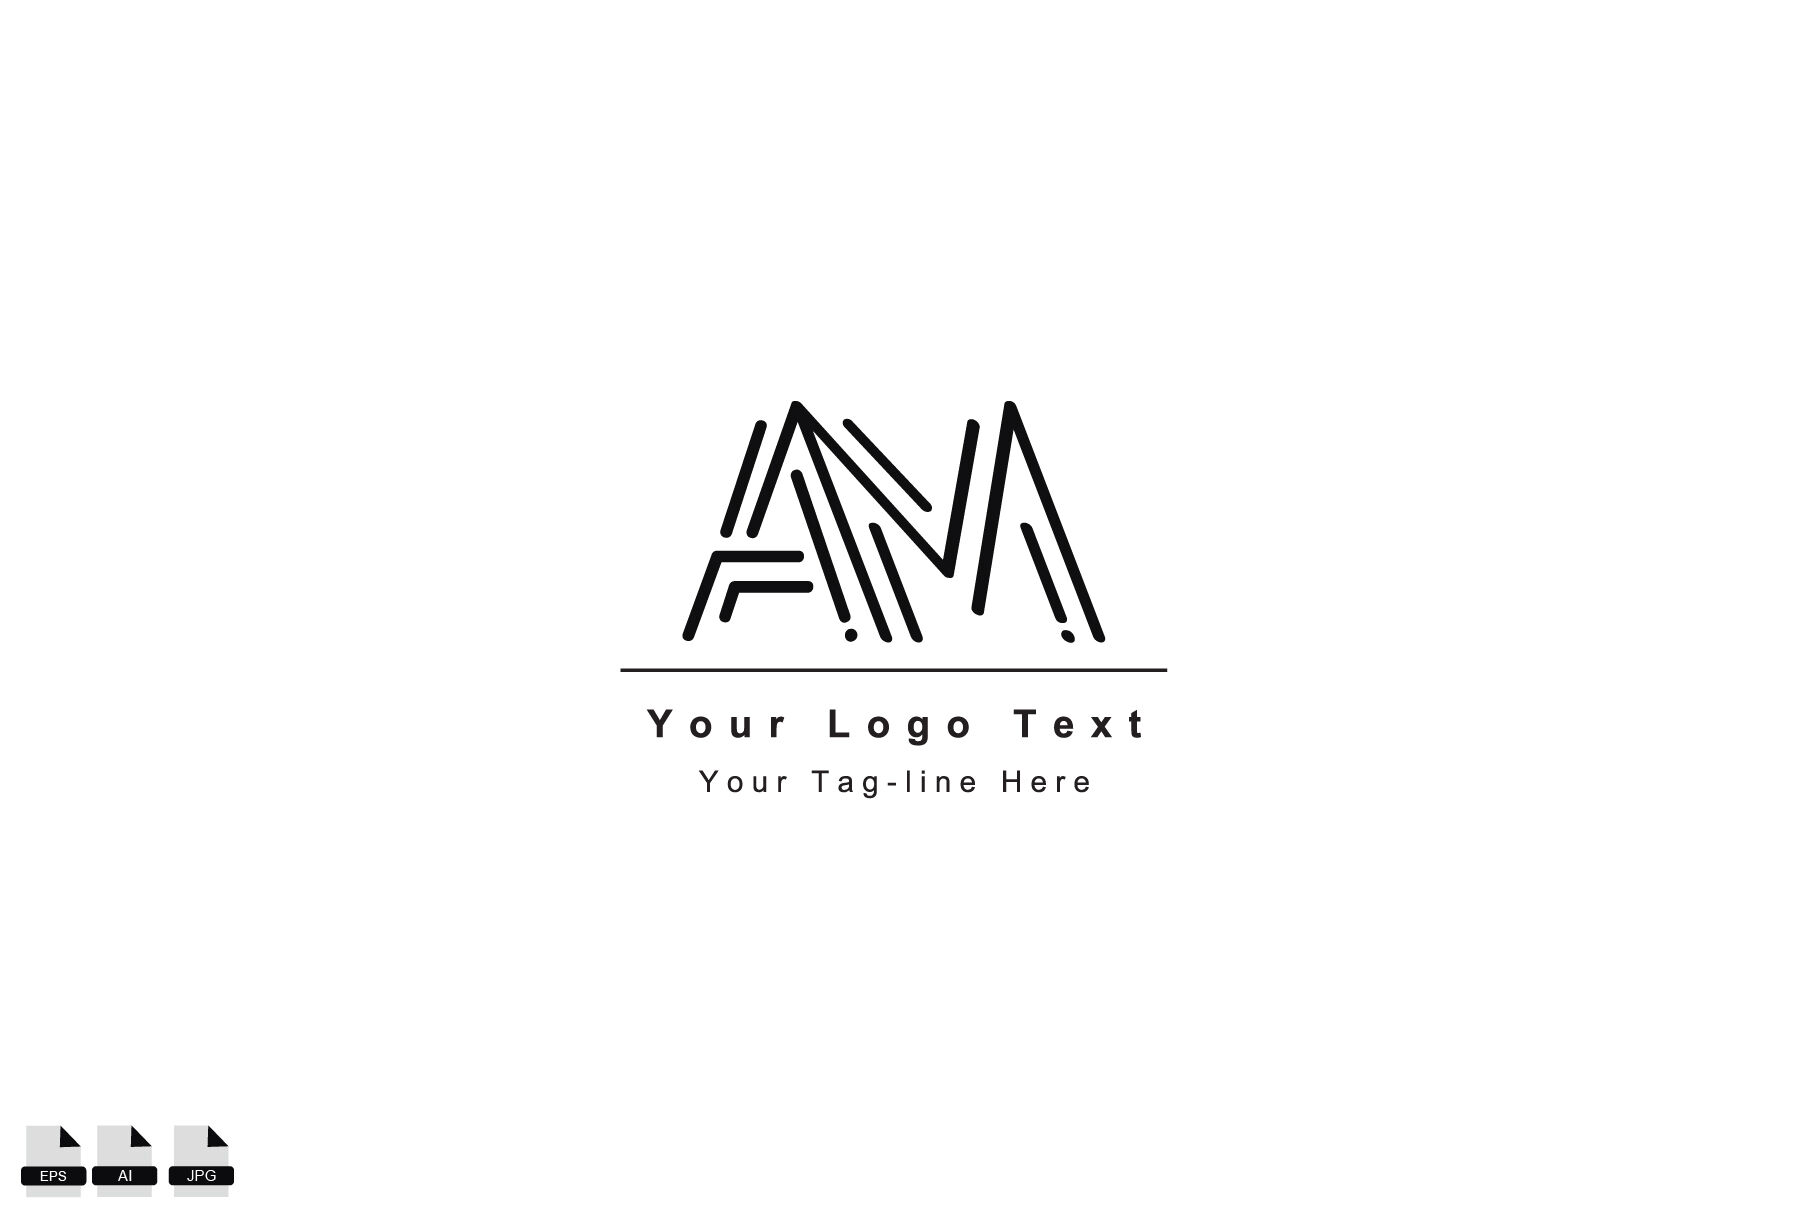 Initials Logo, AM